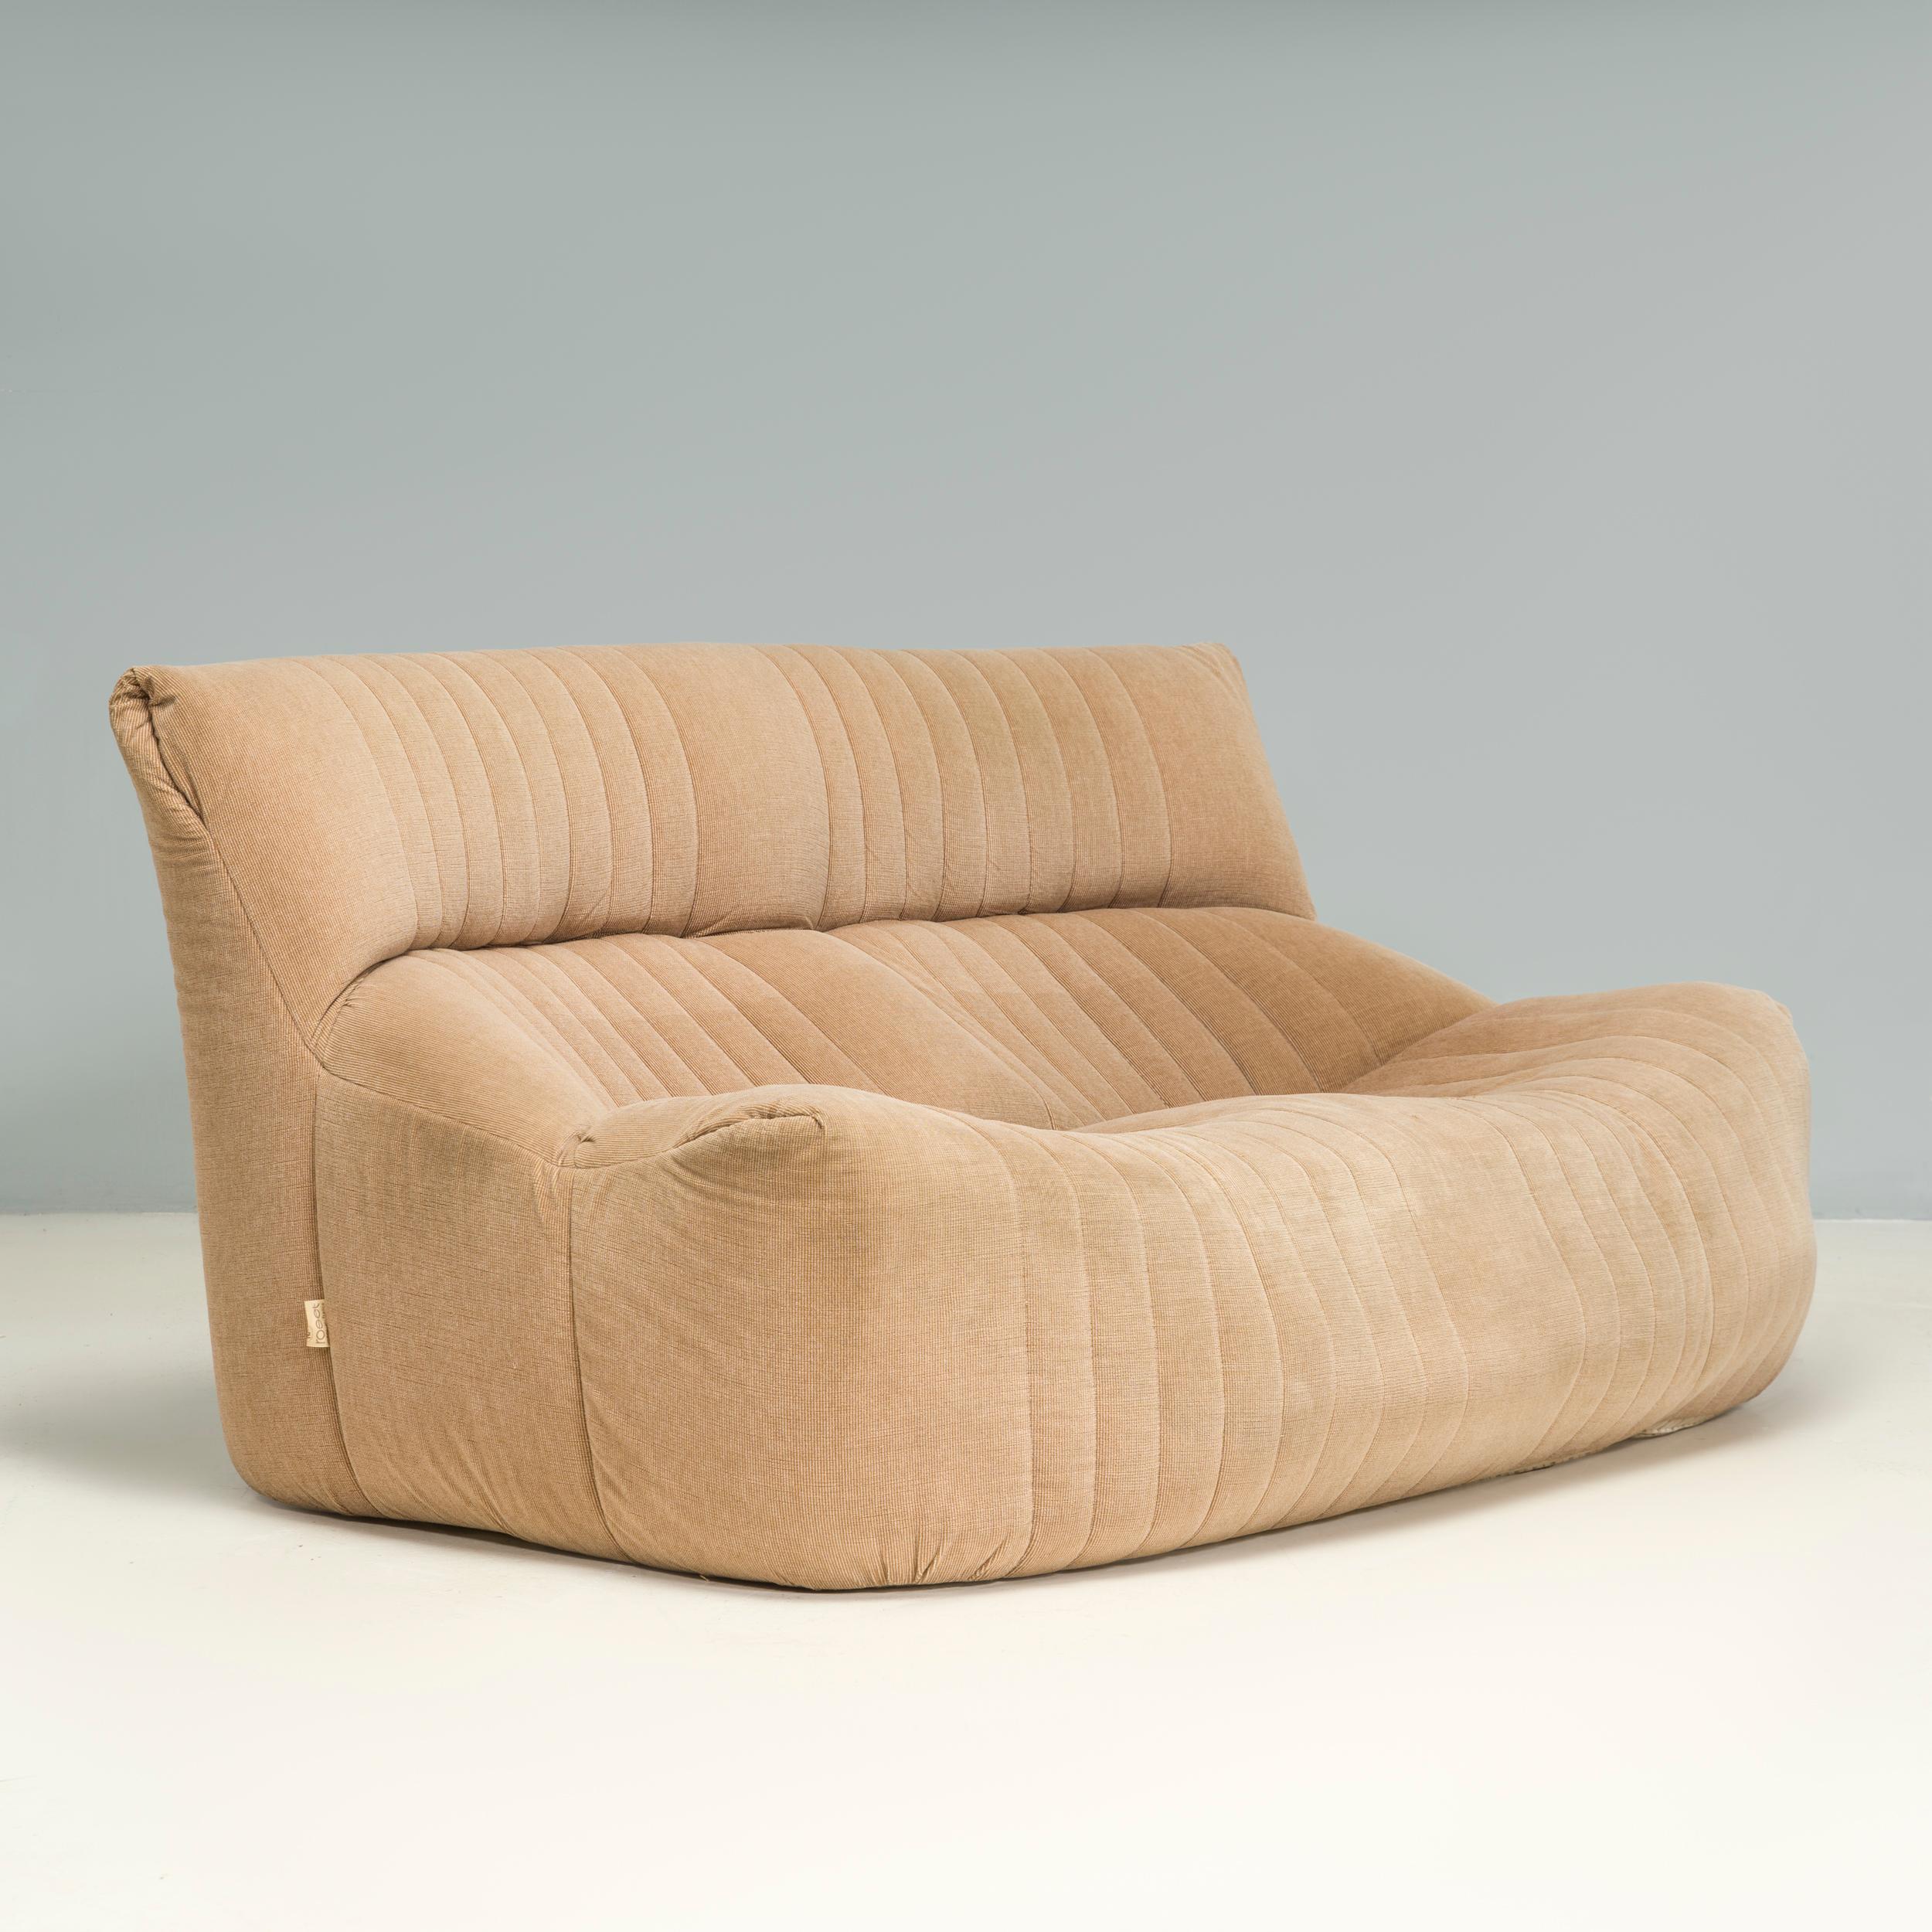 Conçu par Michel Ducaroy pour Ligne Roset, le canapé Aralia présente un style similaire aux modèles emblématiques Togo et Kashima.

Conçu pour un confort décontracté, le canapé deux places est construit uniquement en mousse avec une silhouette